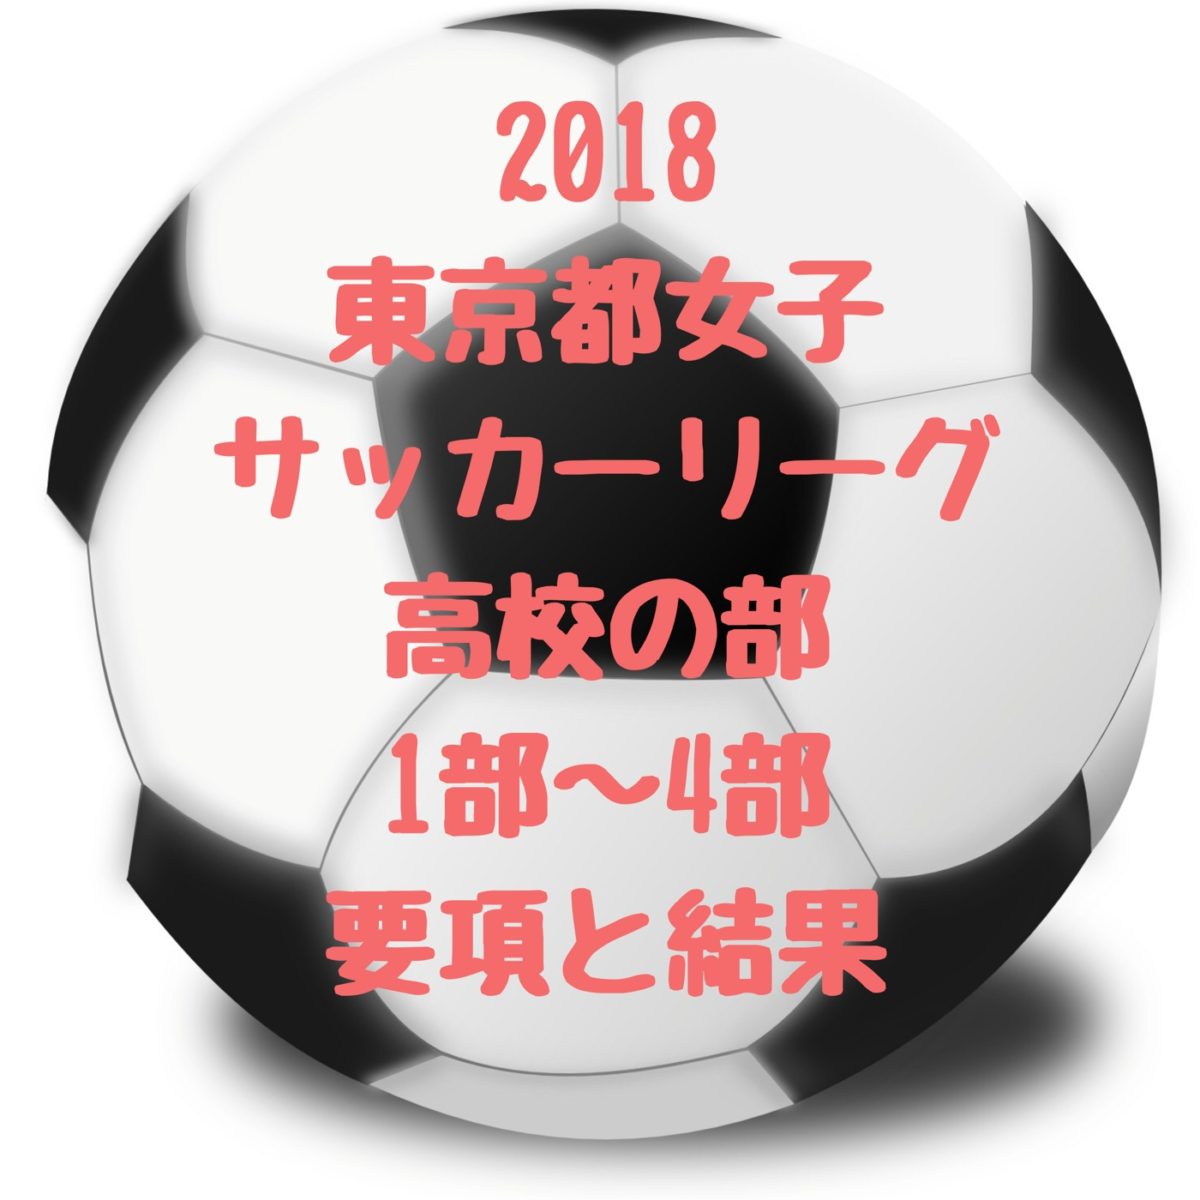 高校女子サッカー 18年度 第38回東京都女子サッカーリーグ 高校の部 1部 2部 3部 4部の結果と要項 入替戦